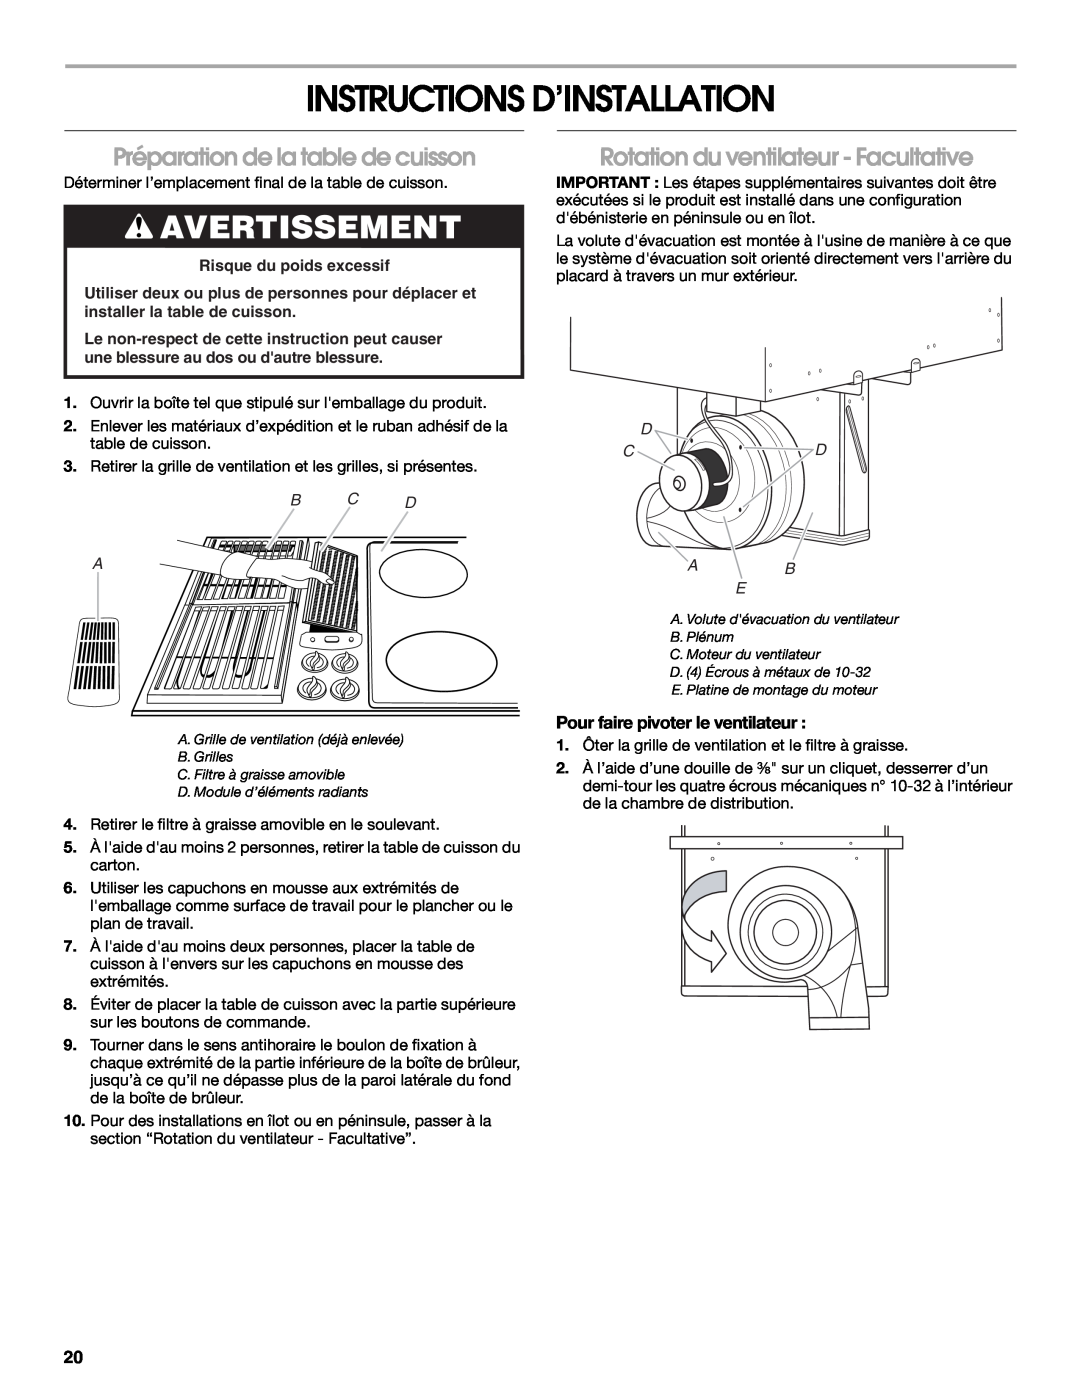 Jenn-Air W10298937B Instructions D’Installation, Préparation de la table de cuisson, Rotation du ventilateur - Facultative 